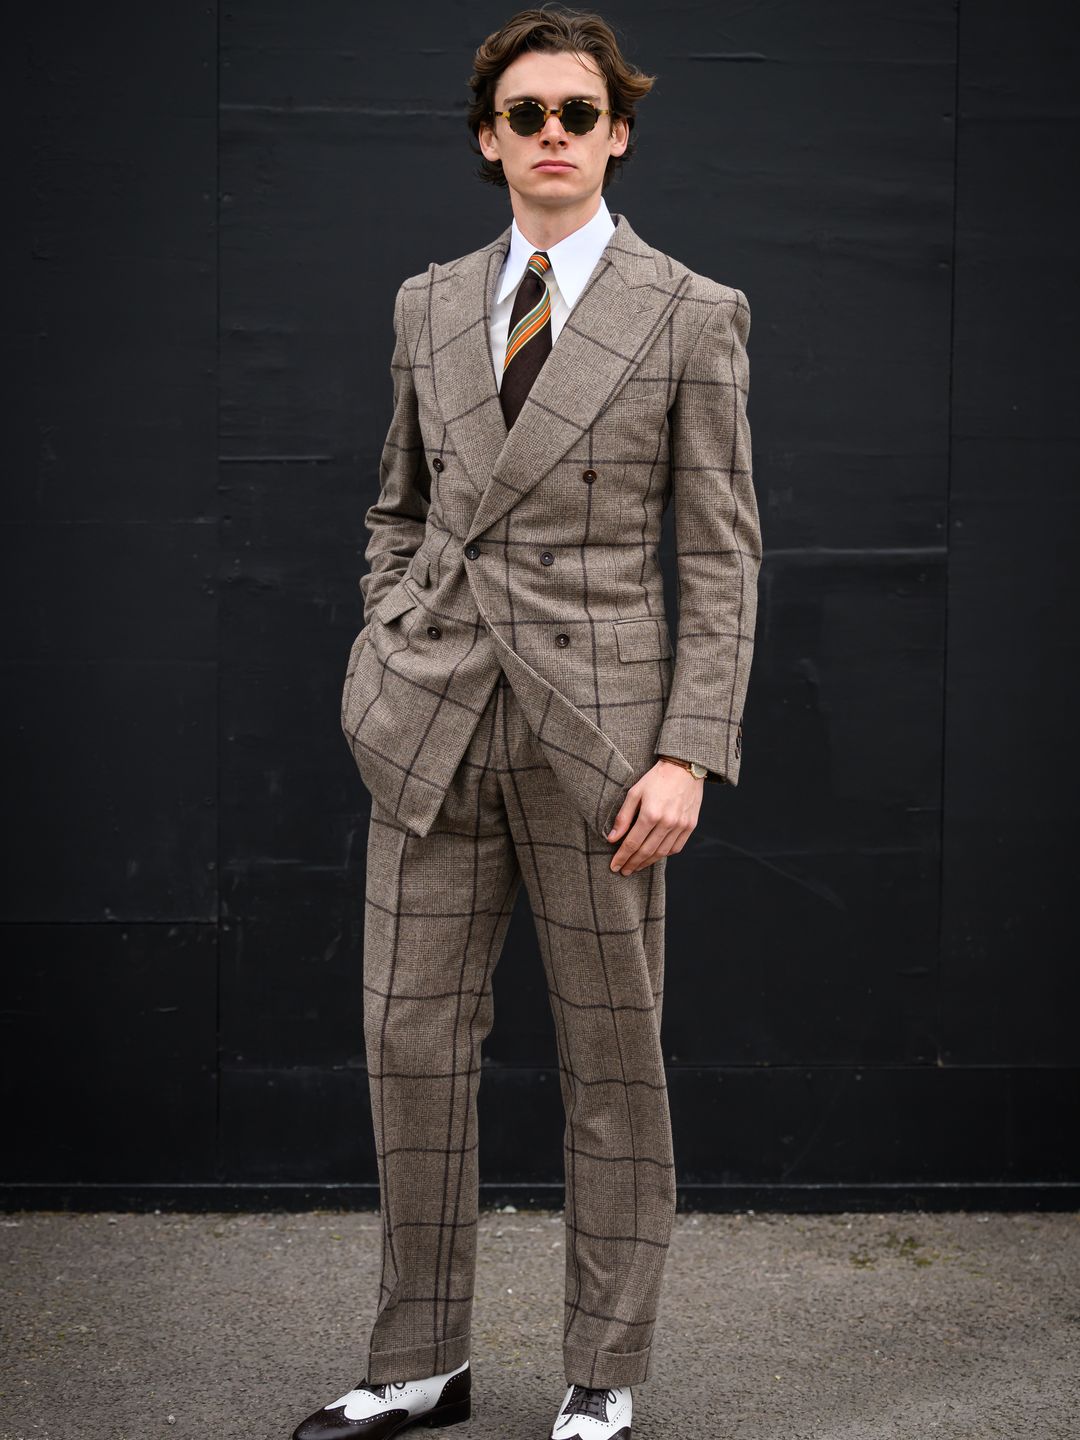 Matthias Le Fevre attends Style Wednesday, day two of the Cheltenham Festival at Cheltenham Racecourse 